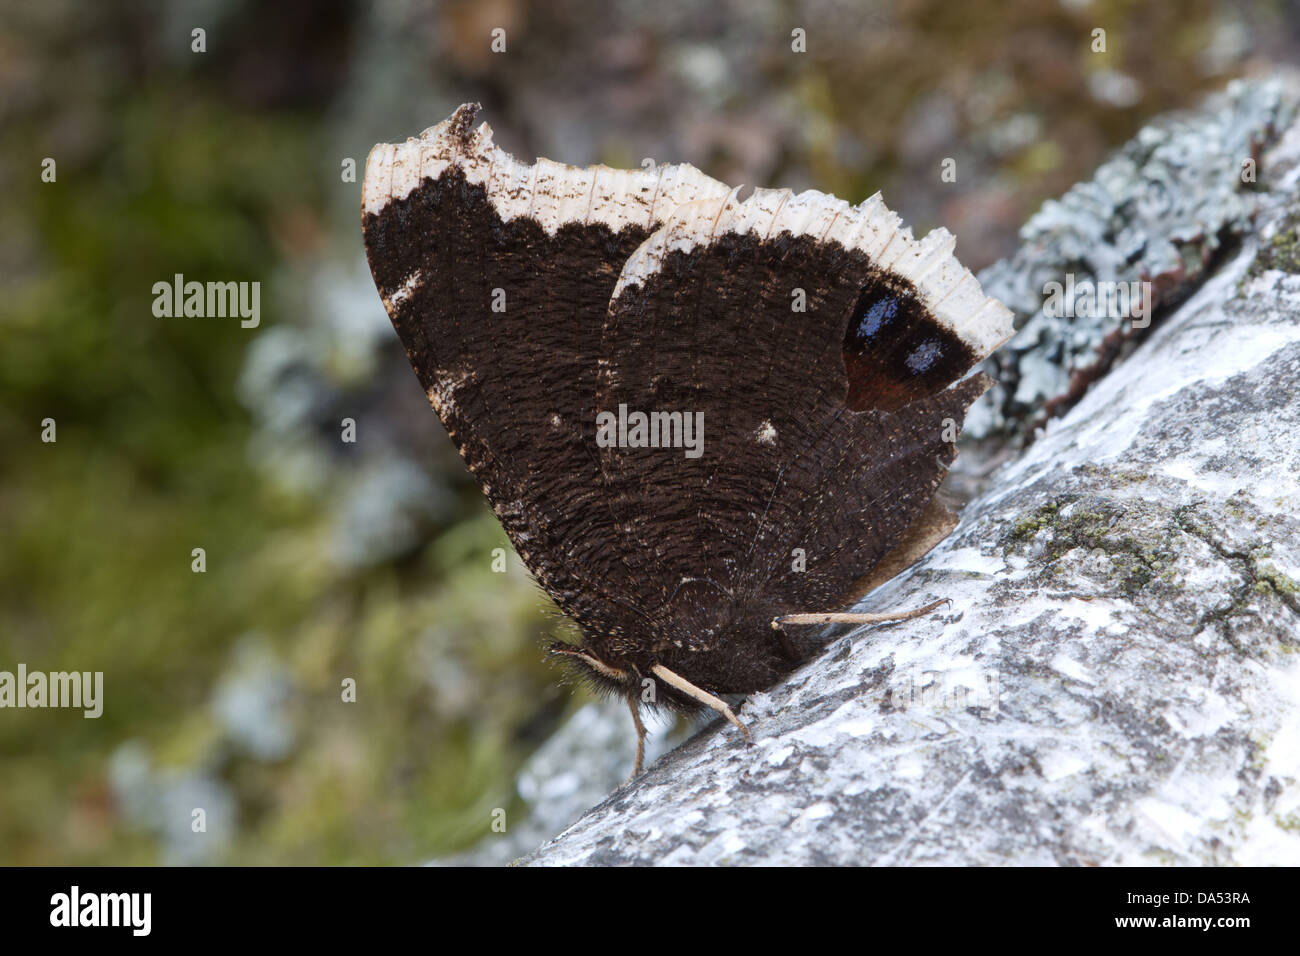 Camberwell Schönheit wartet für einen Kumpel mit seiner markanten zwei lila "Auge" Flügelmuster zeigt auf einem Ast der Birke Stockfoto